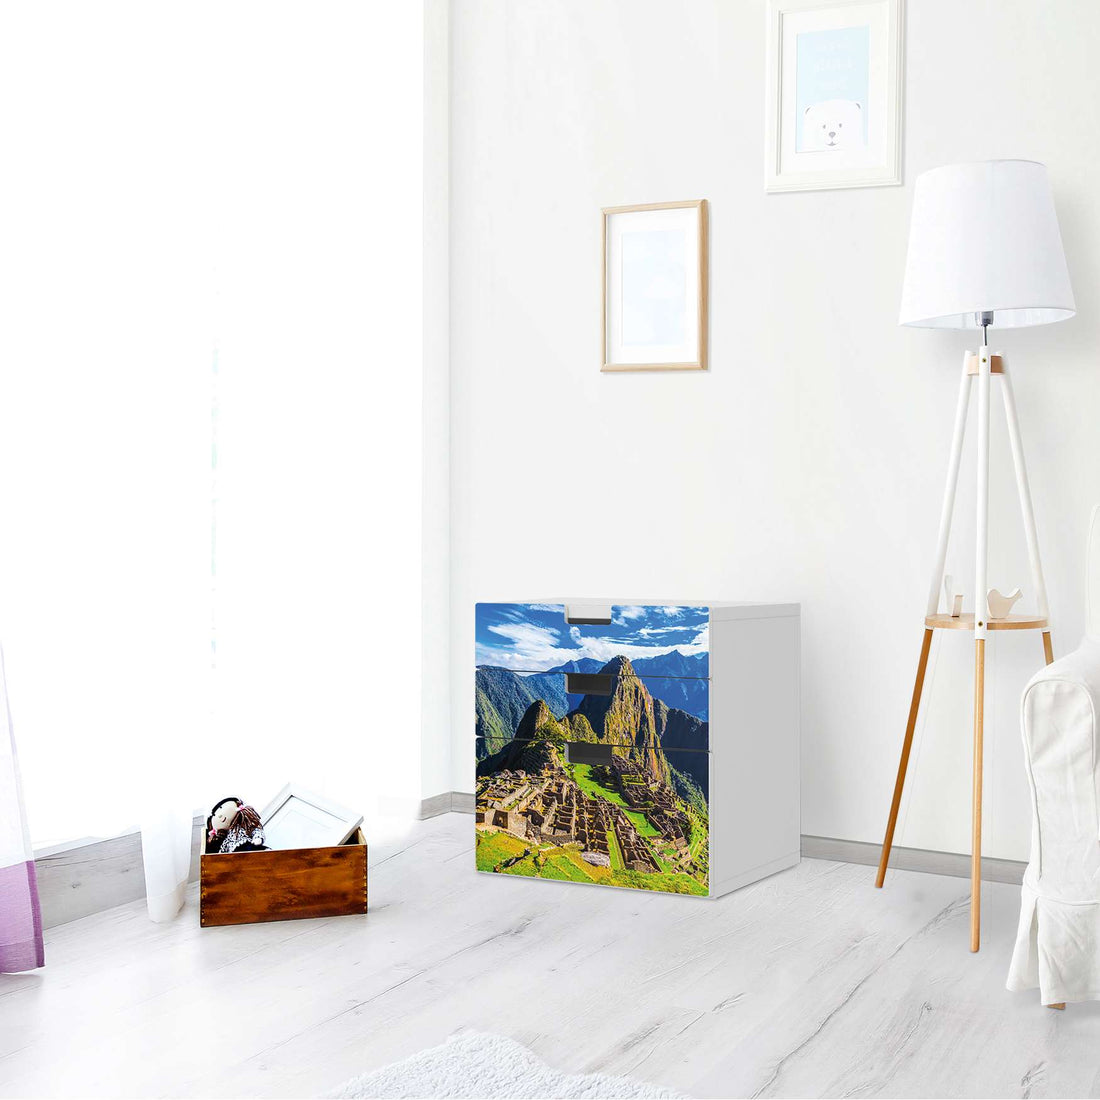 Folie für Möbel Machu Picchu - IKEA Stuva Kommode - 3 Schubladen (Kombination 1) - Wohnzimmer